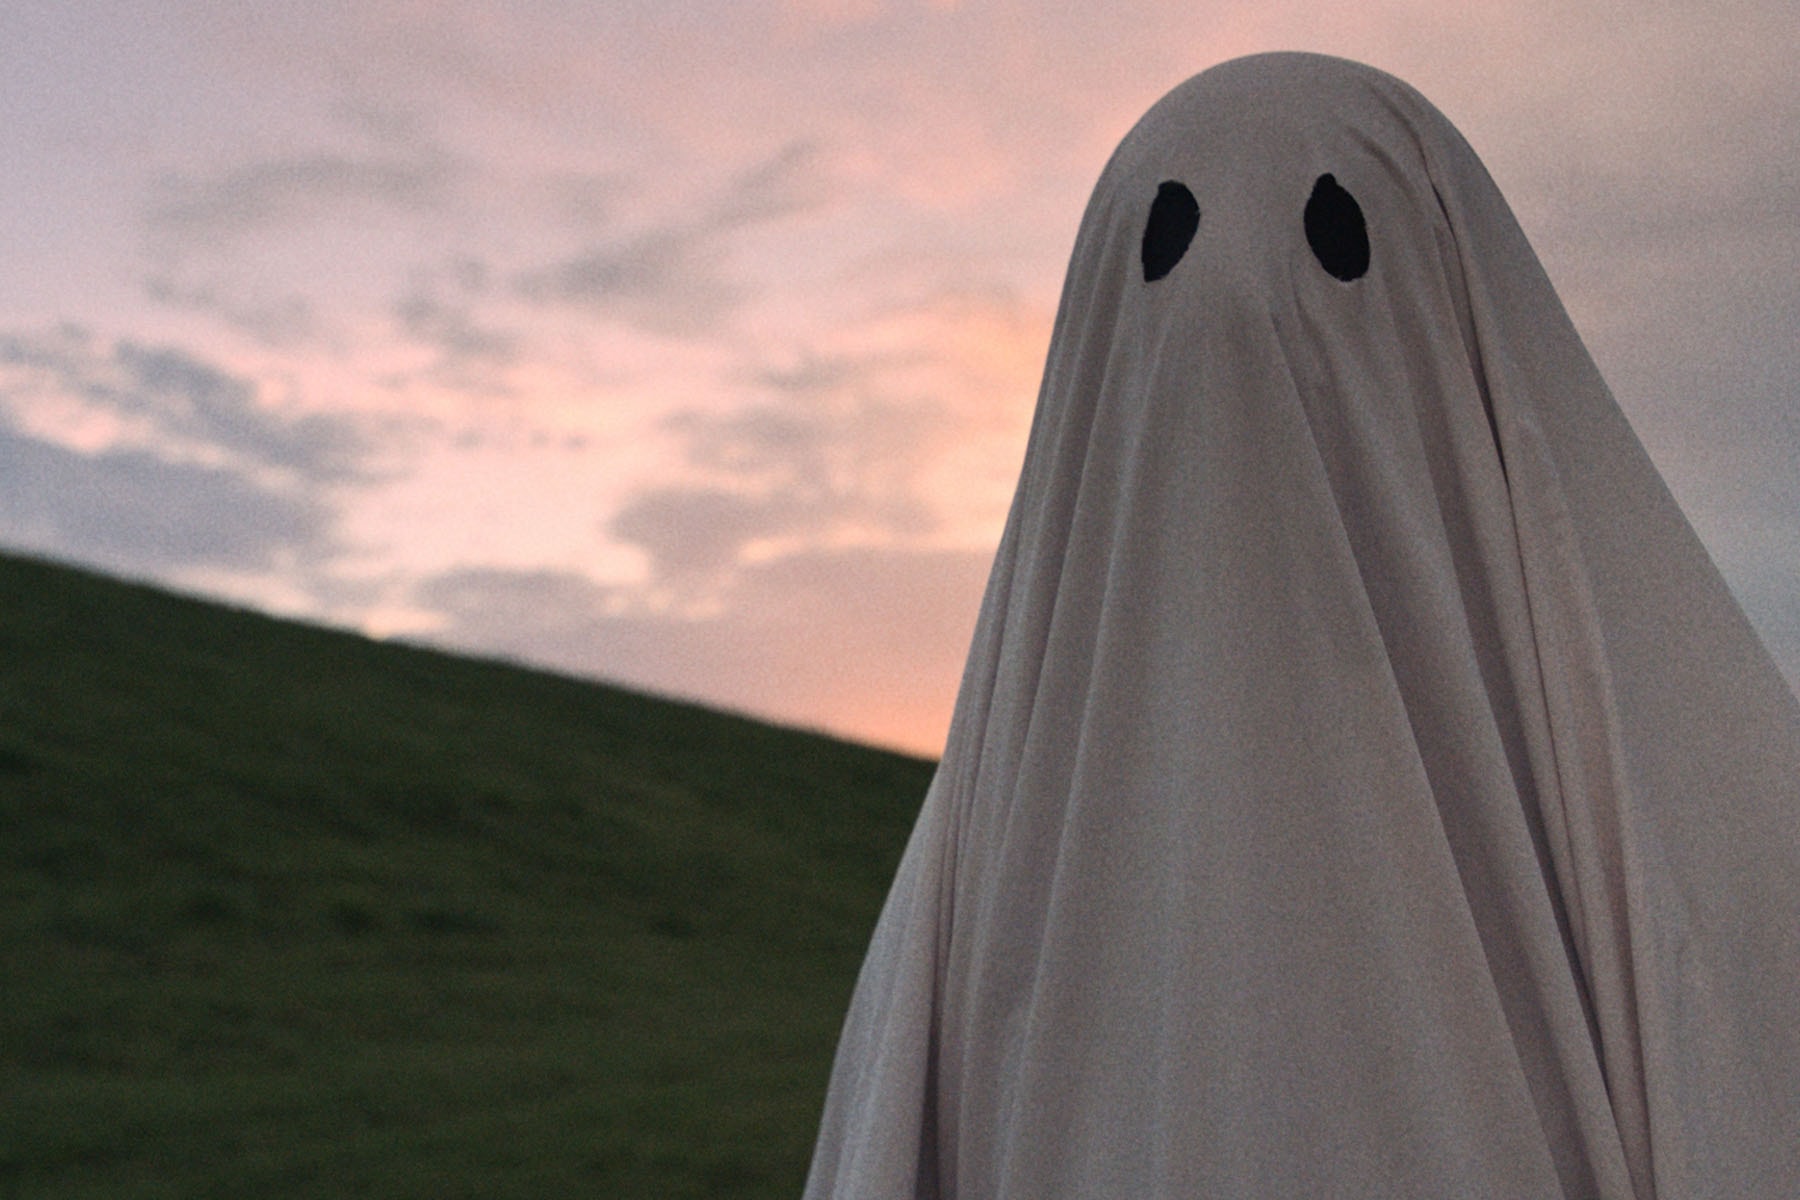 奇幻愛情片《A Ghost Story》將於香港正式上映